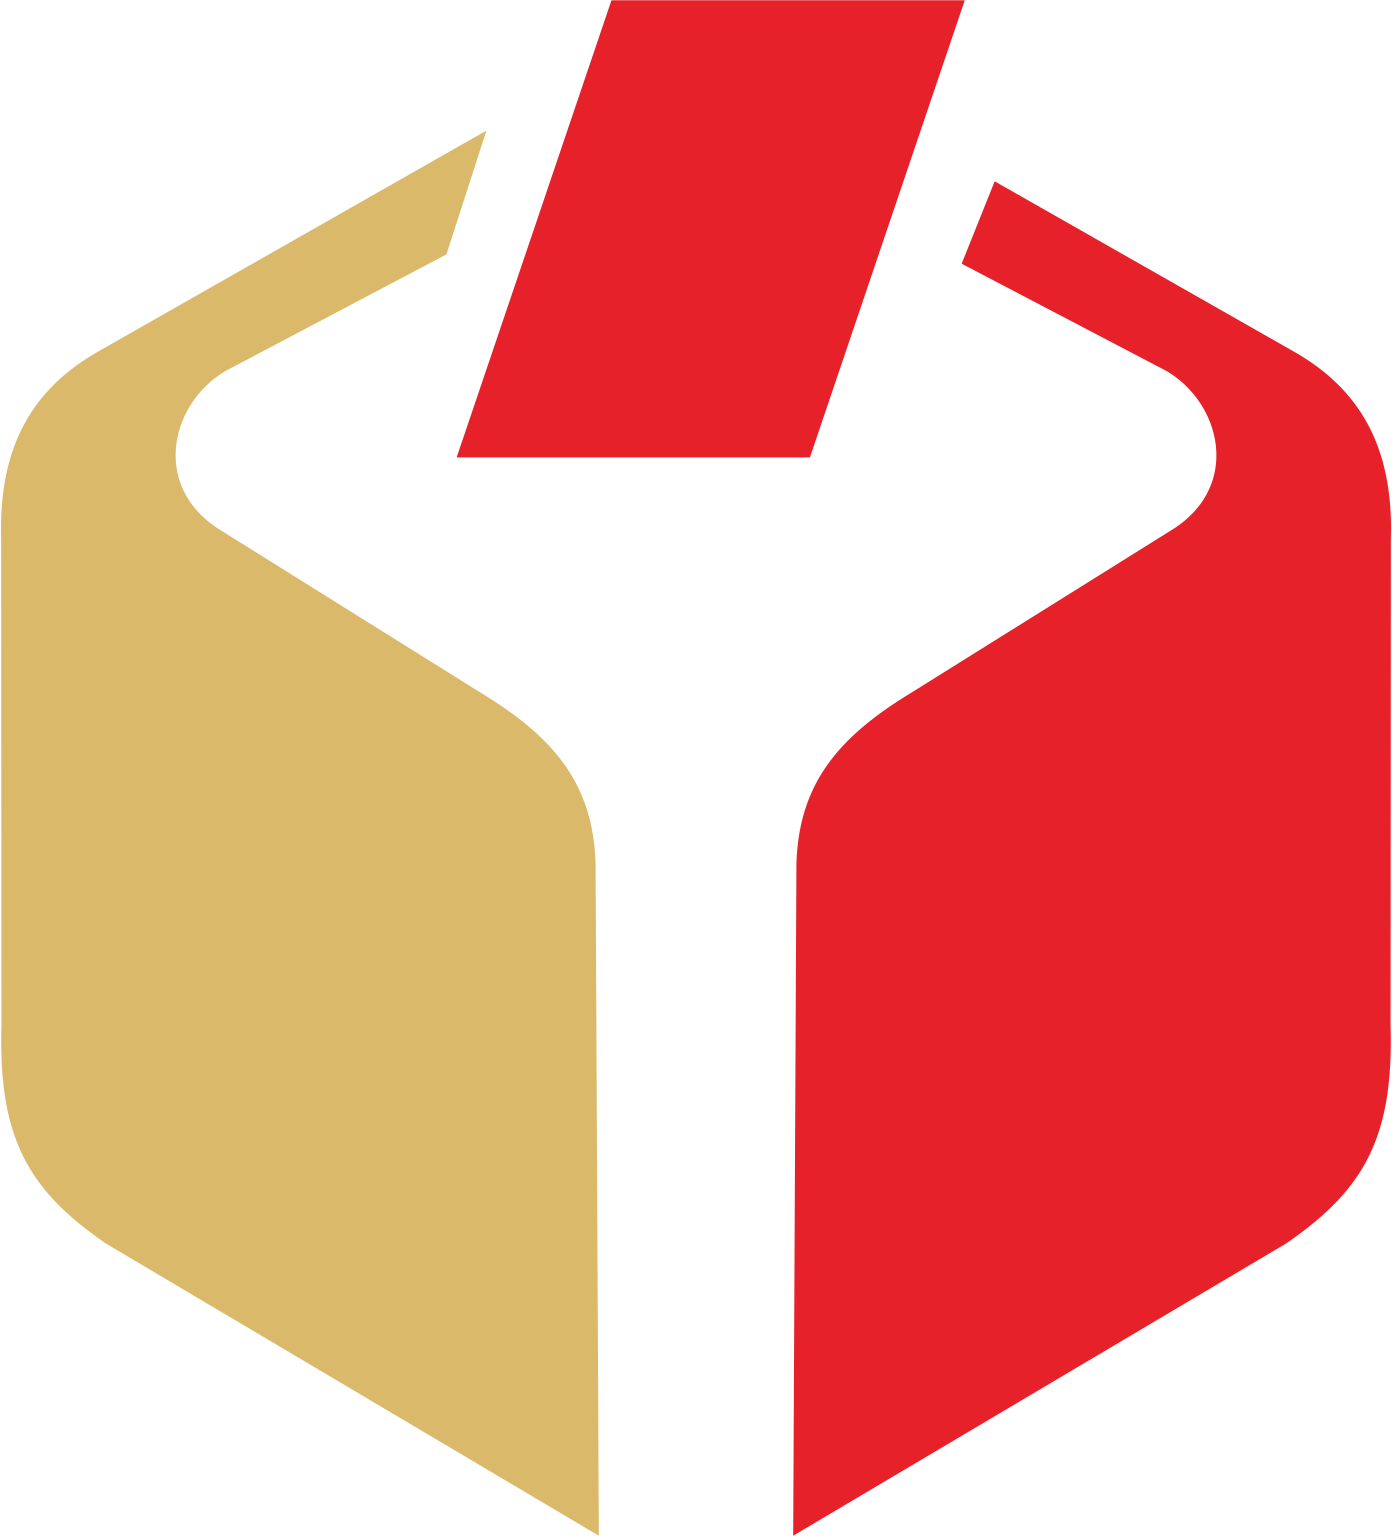 Logo Panwaslu Png - KibrisPDR